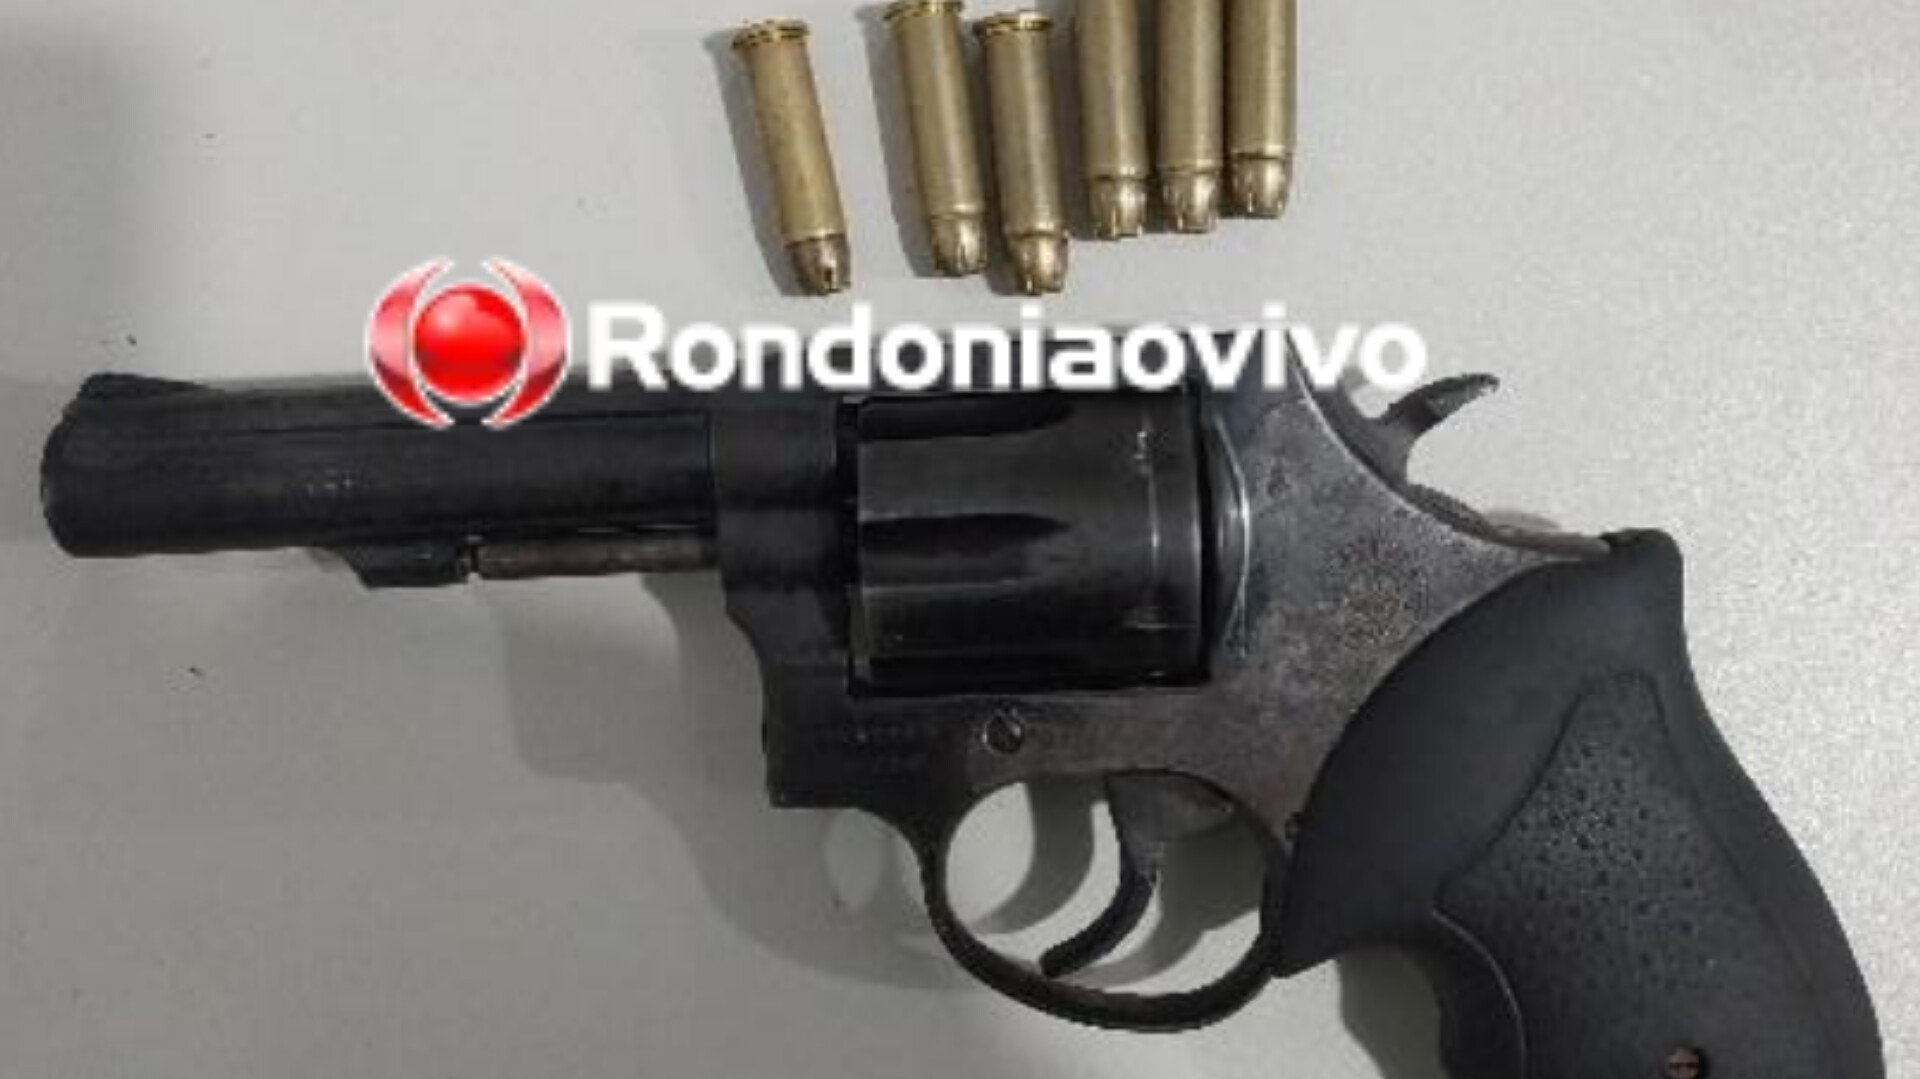 PORTO MADERO: Integrantes de grupo criminoso são flagrados com arma após saírem de condomínio 